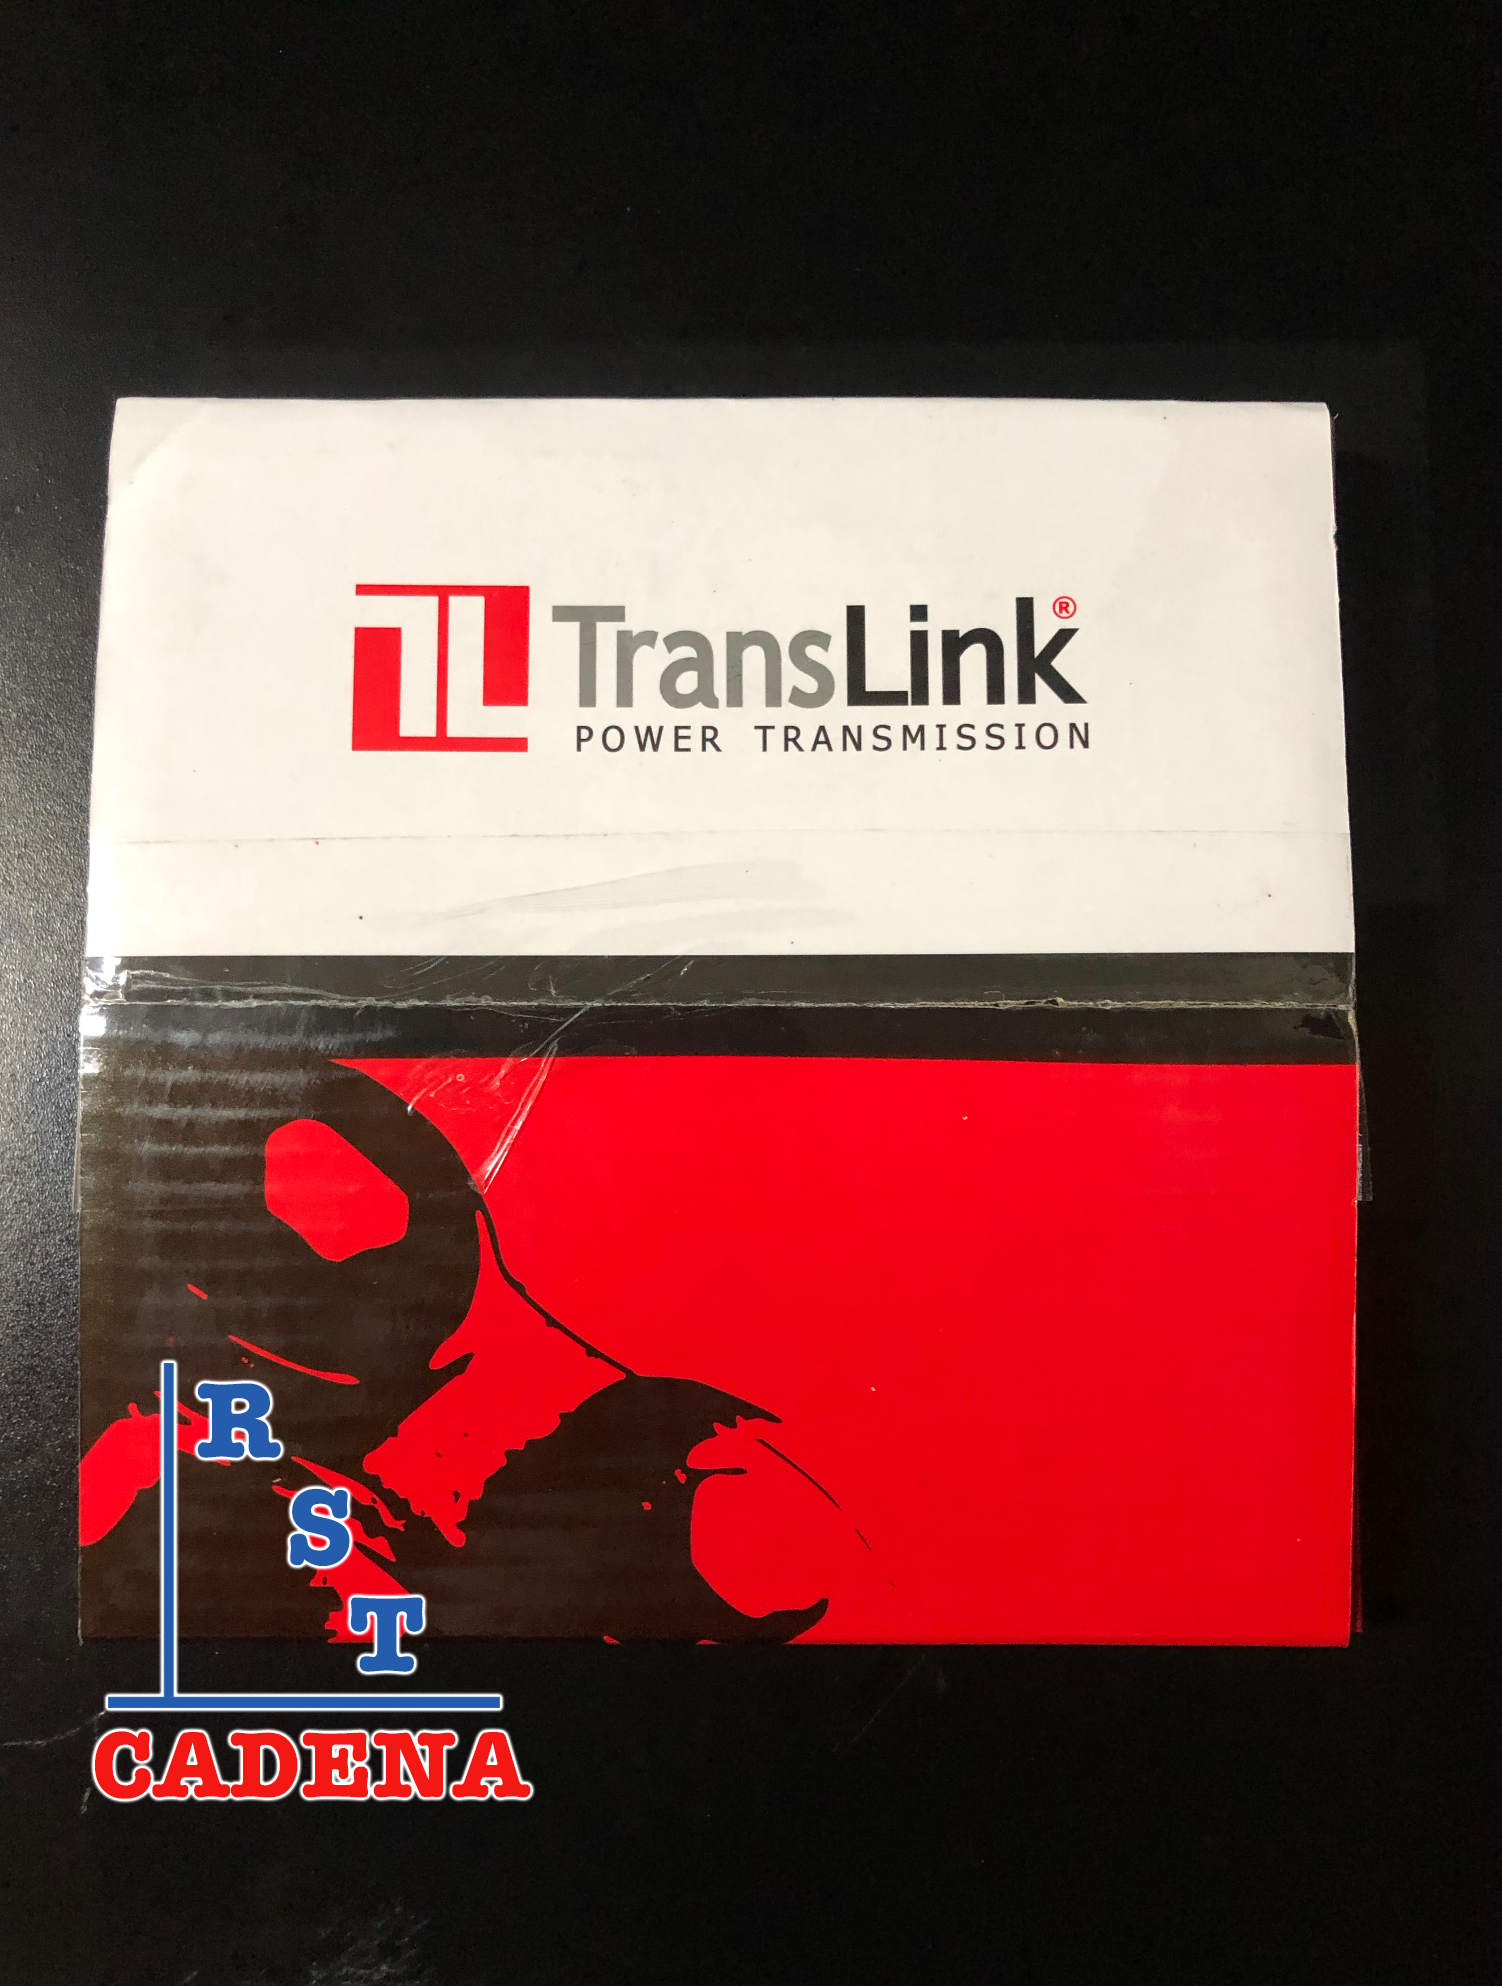 Caja de cadena paso 140-1 TransLink